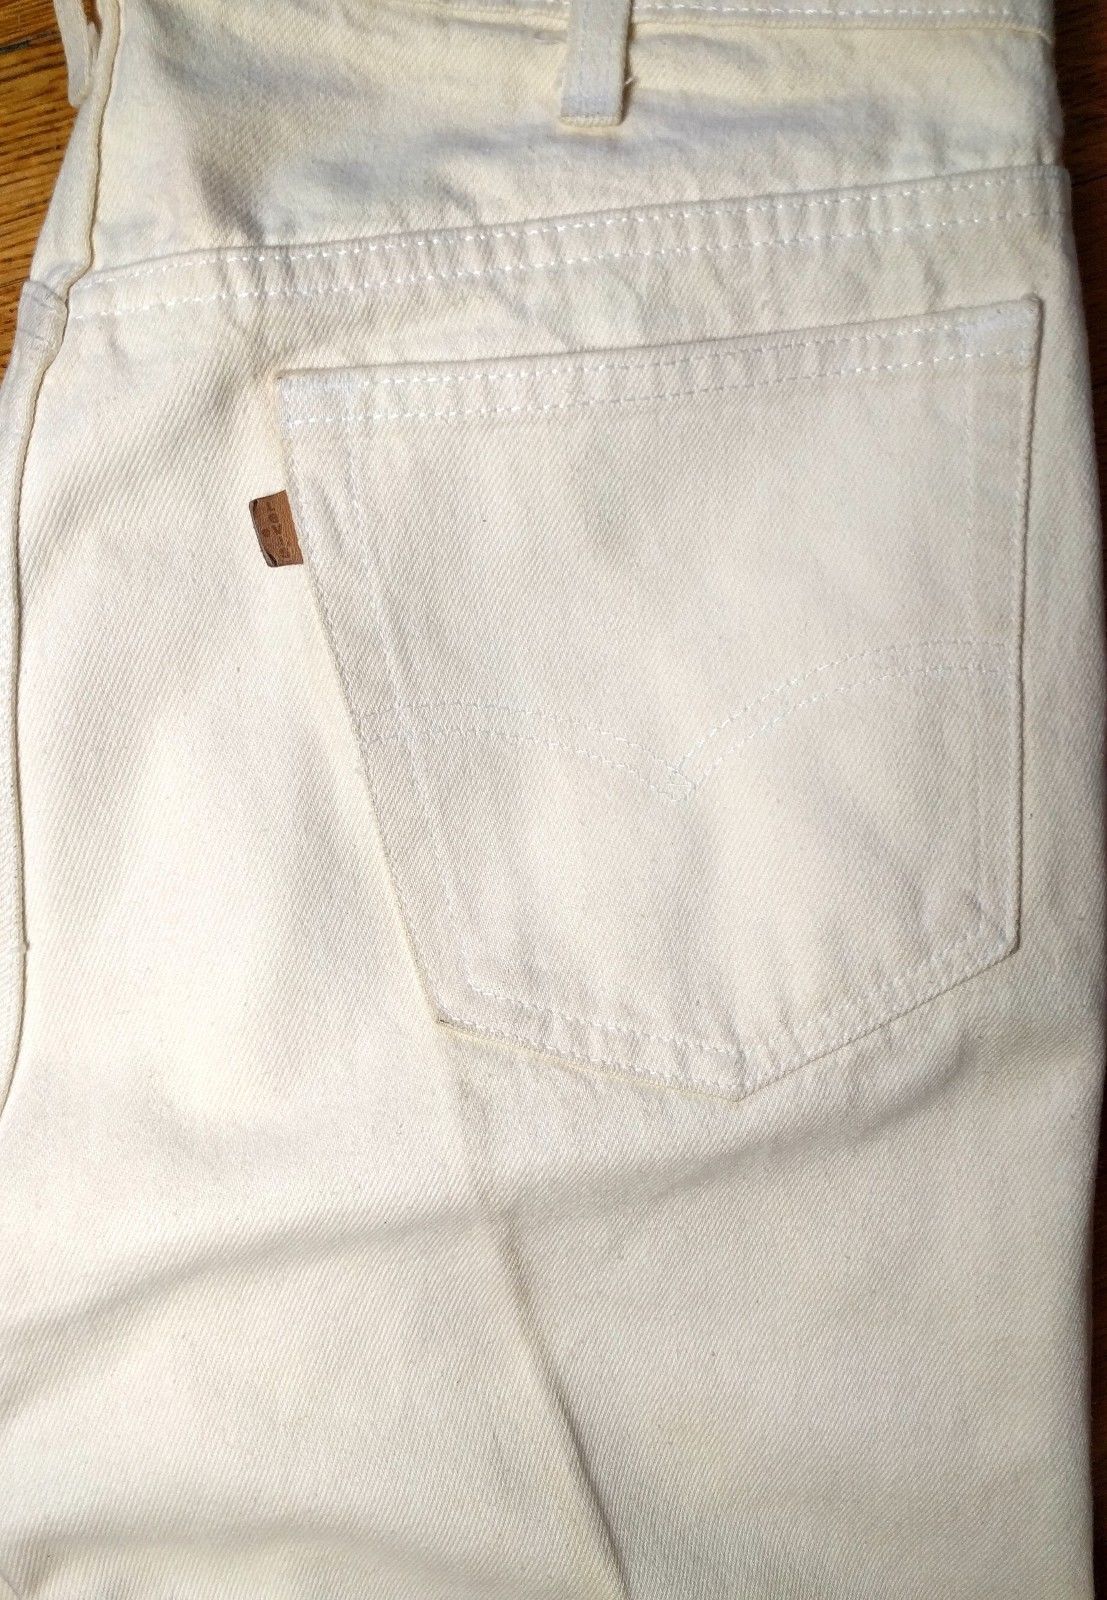 levi's two horse brand khaki pants